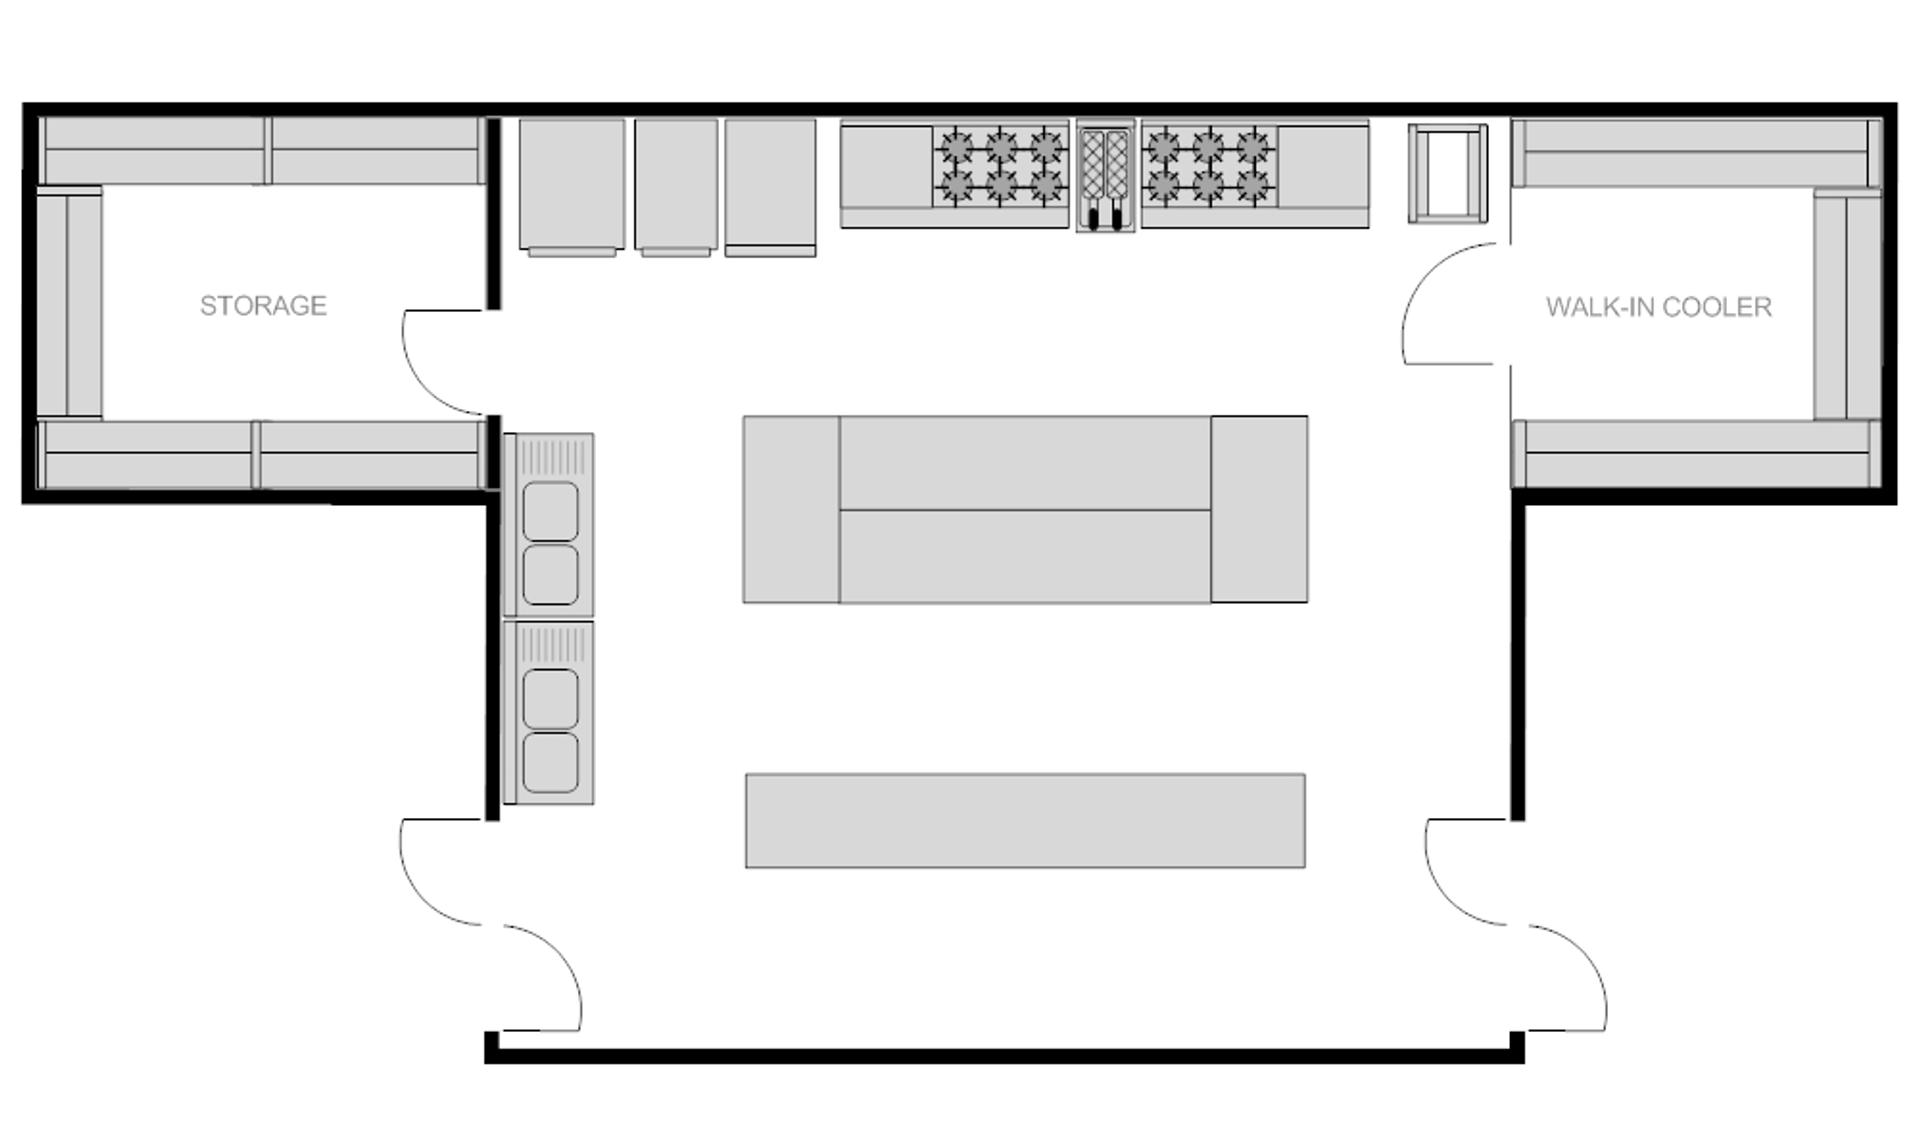 Restaurant kitchen floor plan